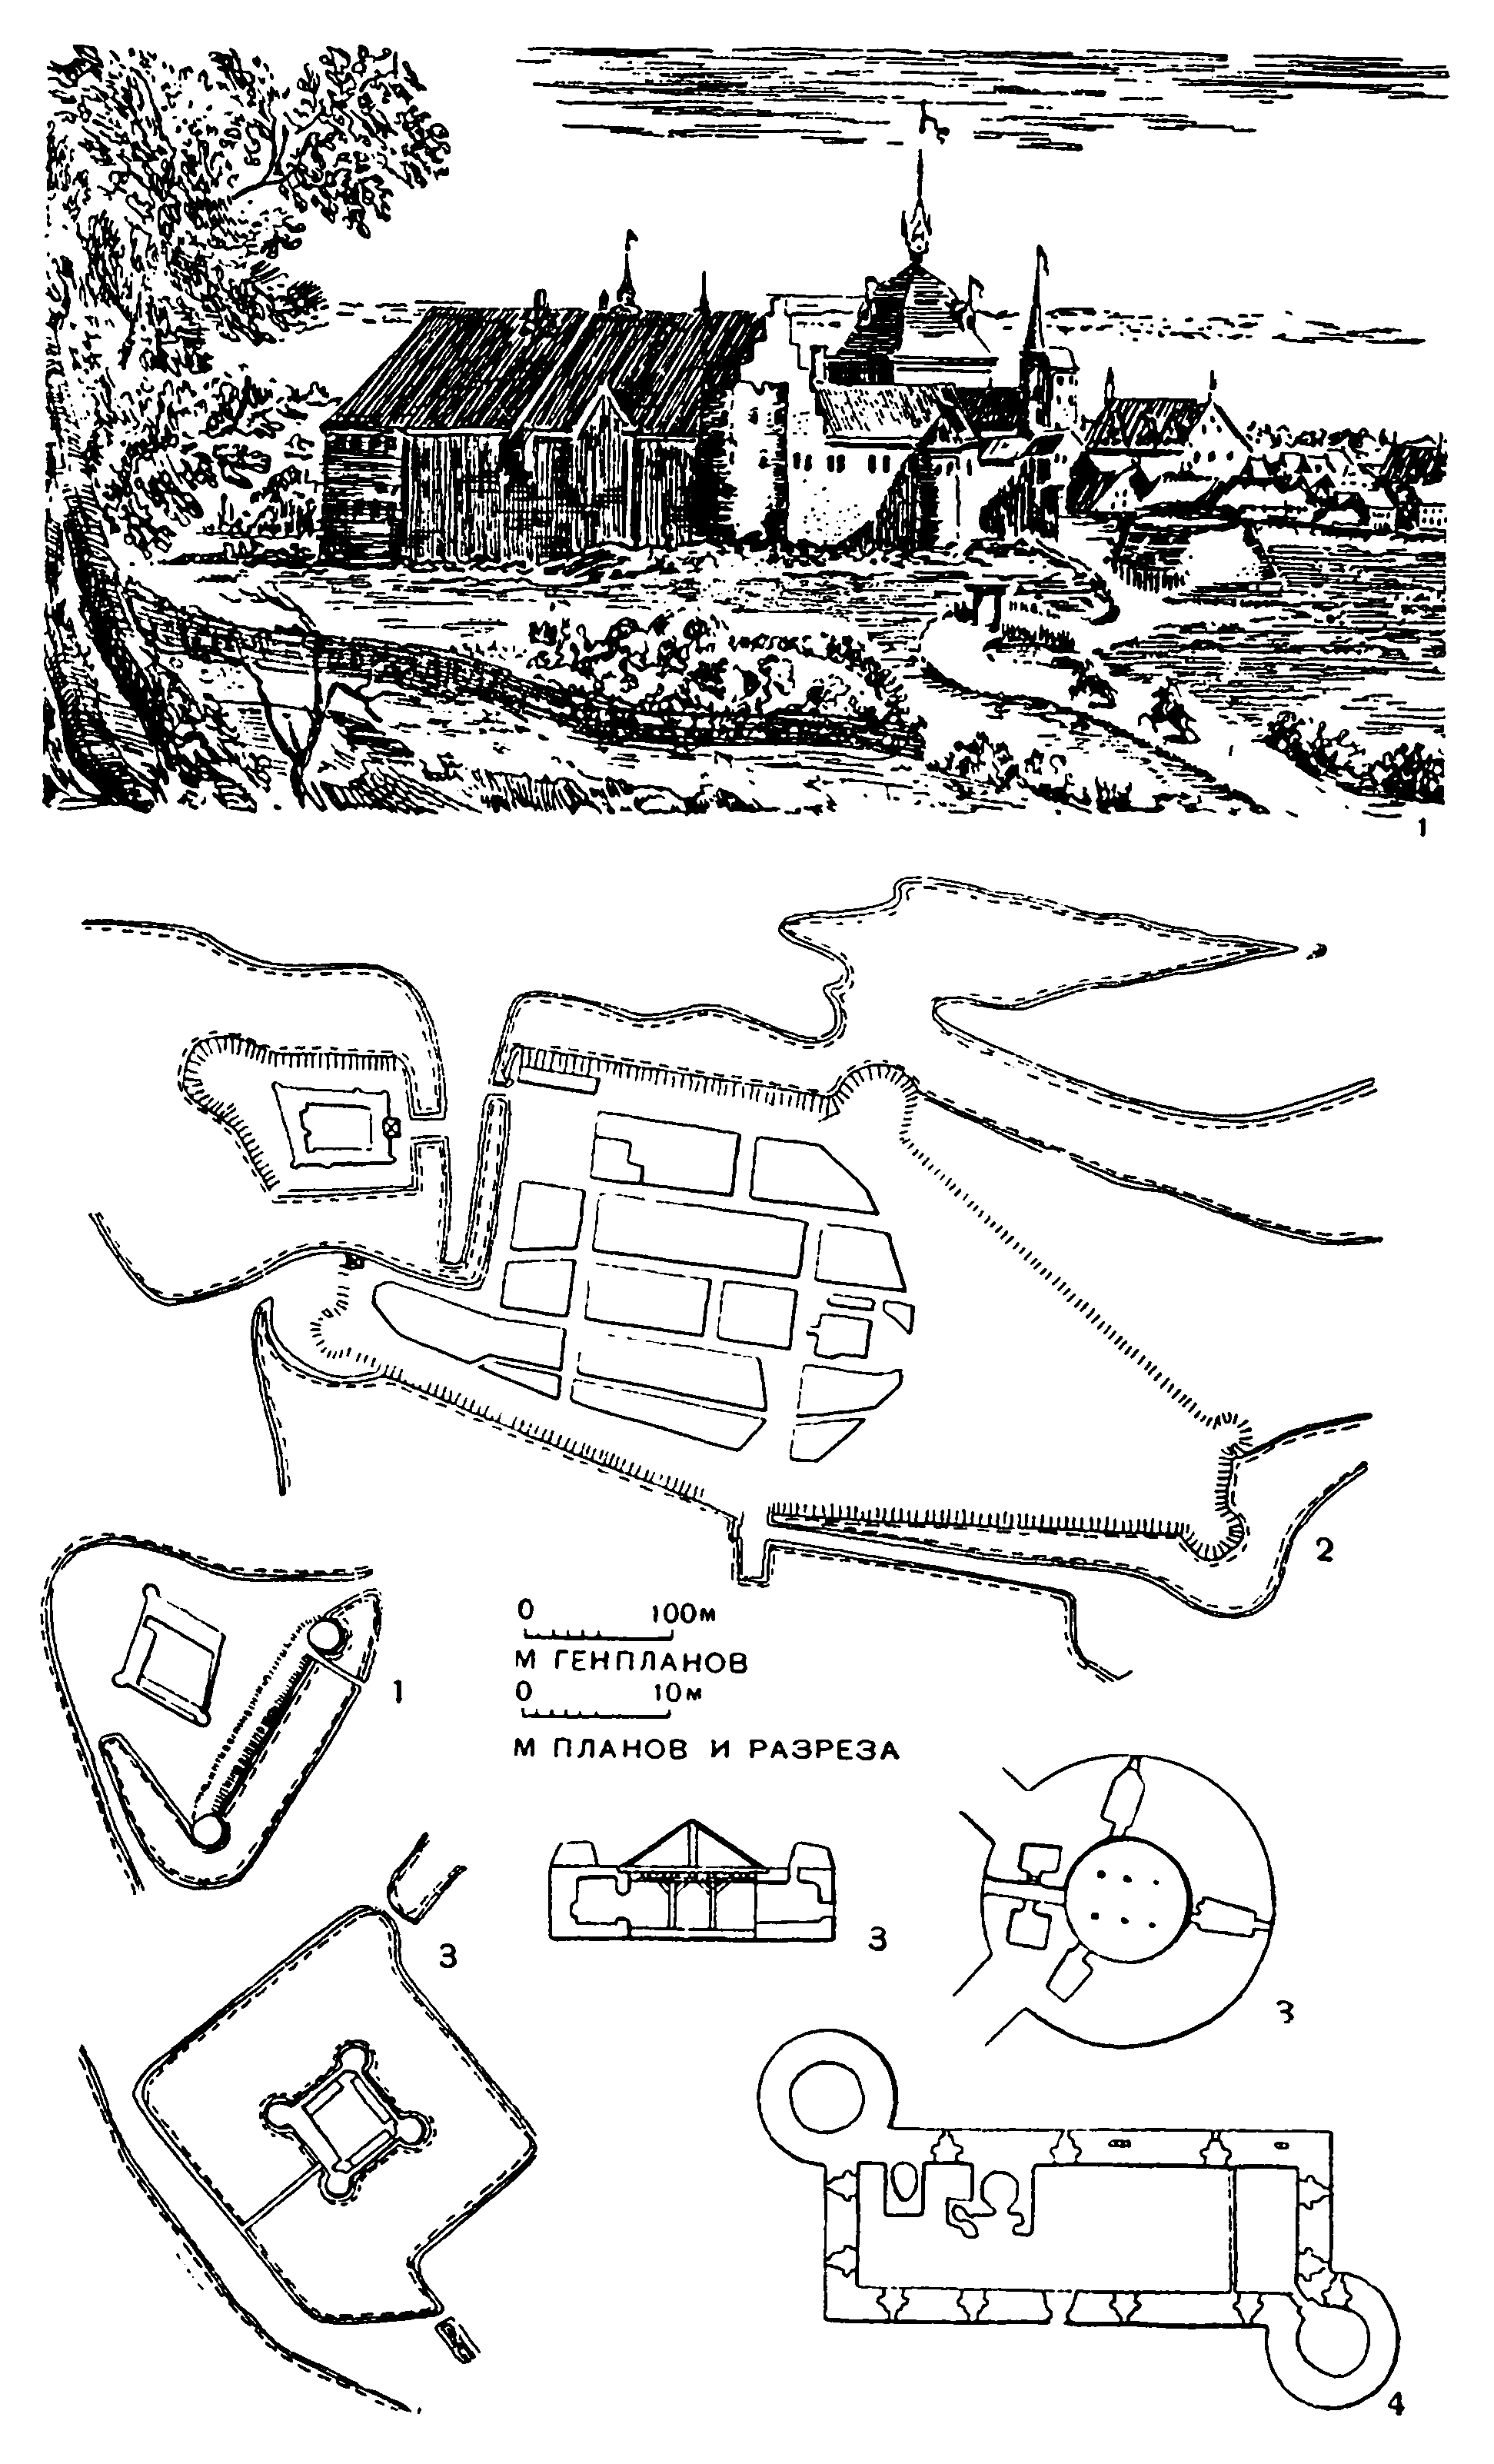 1. Развитие укрепленных замков 1 — Сеннерборг; 2 — Нюборг; 3 — Ландскруна; 4 — Мокаслот